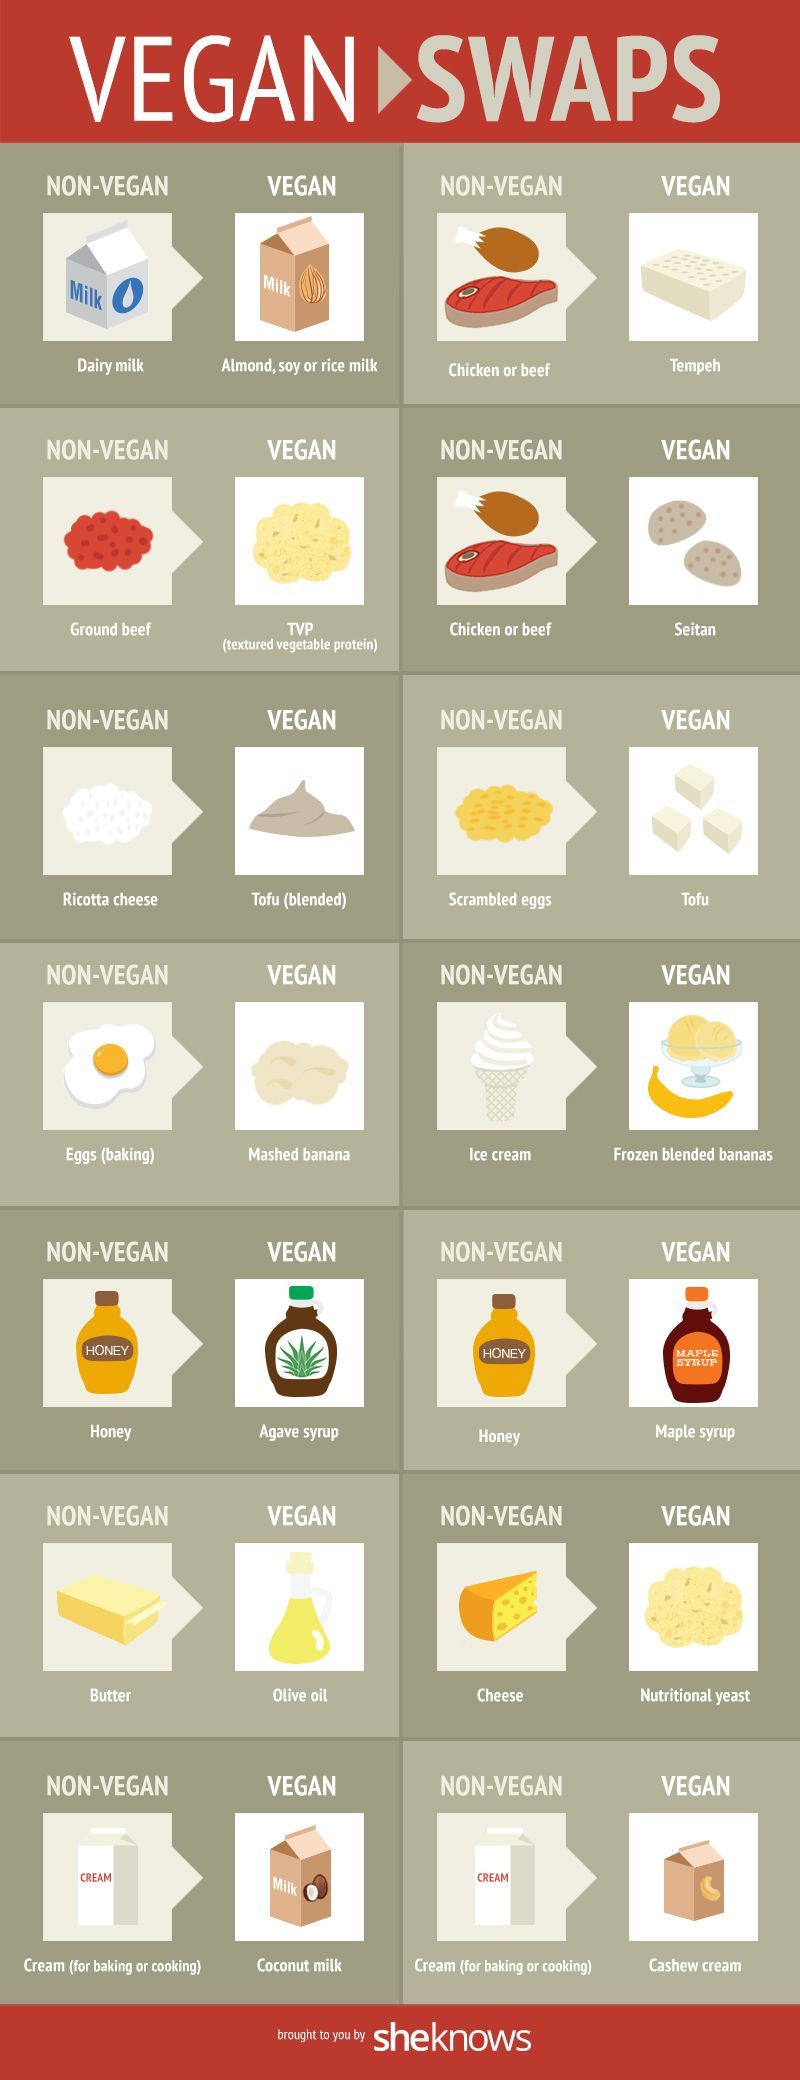 Vegan Swaps! Very helpful for the aspiring vegans :)